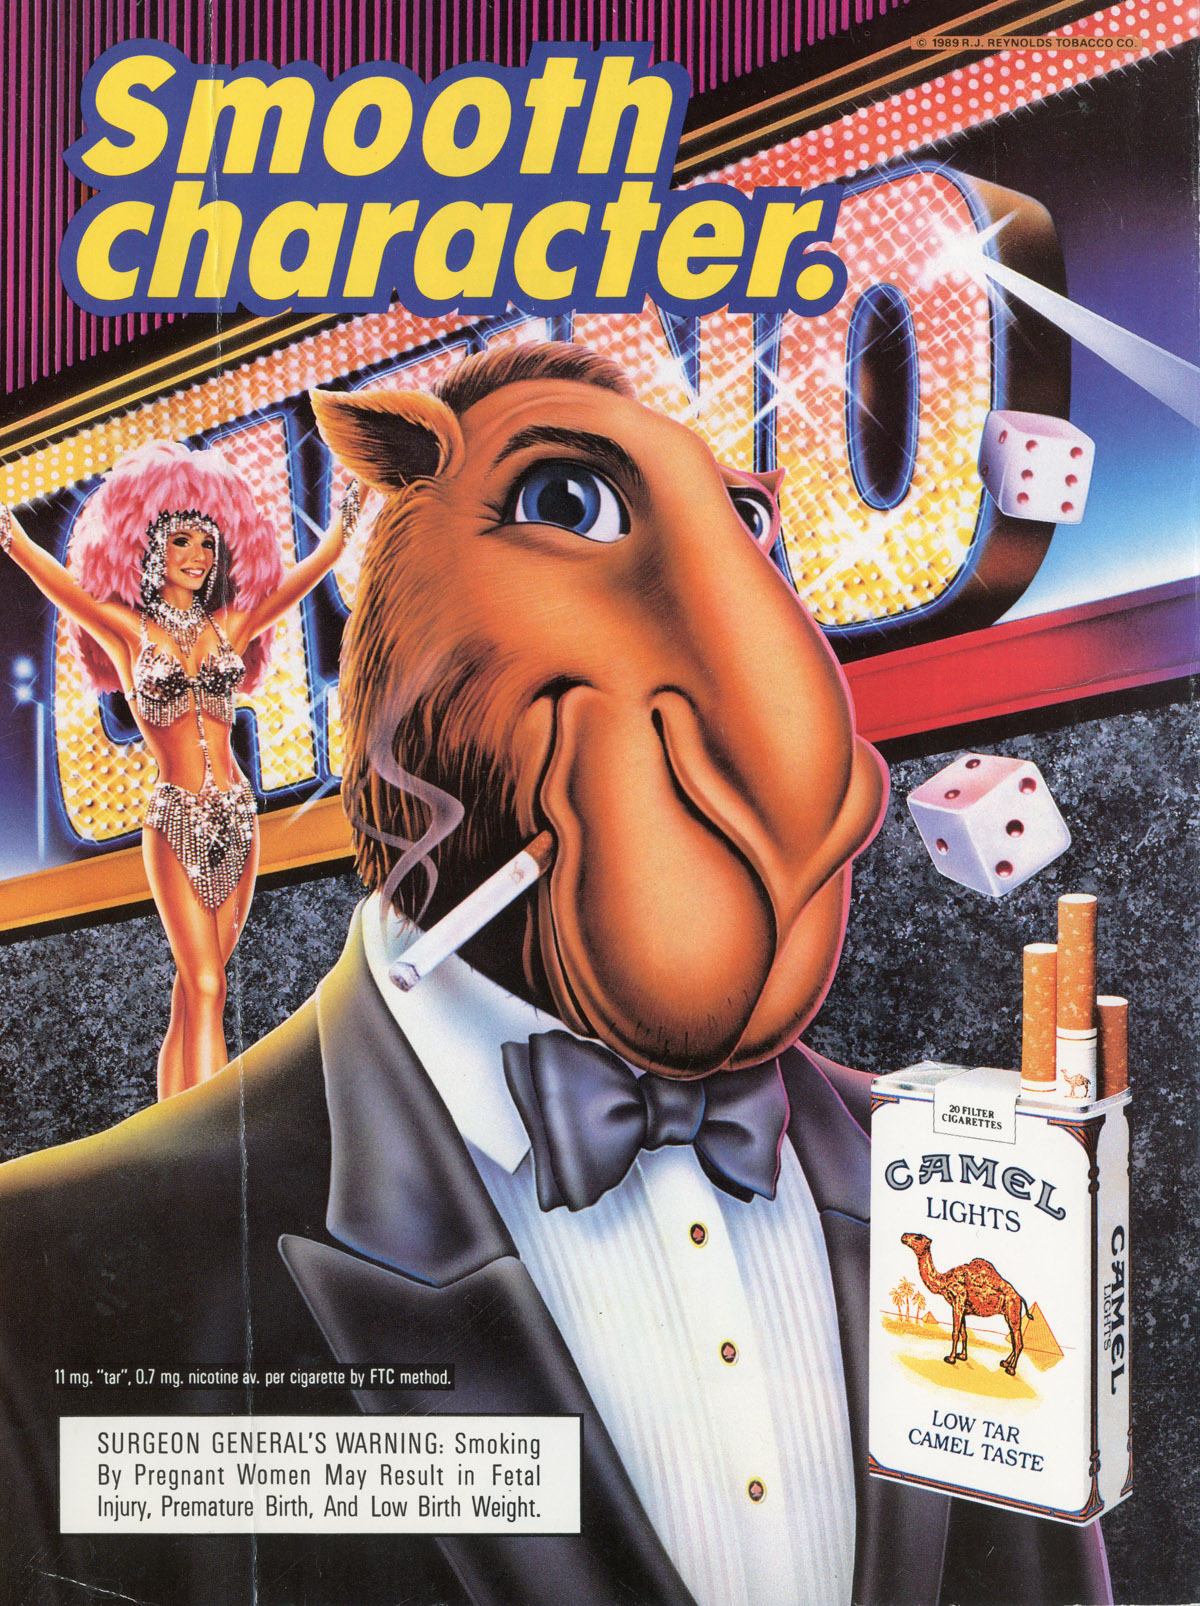 R.J. Reynolds Joe Camel campaign (1988-1997) | The Evolution of Cigarette Advertising